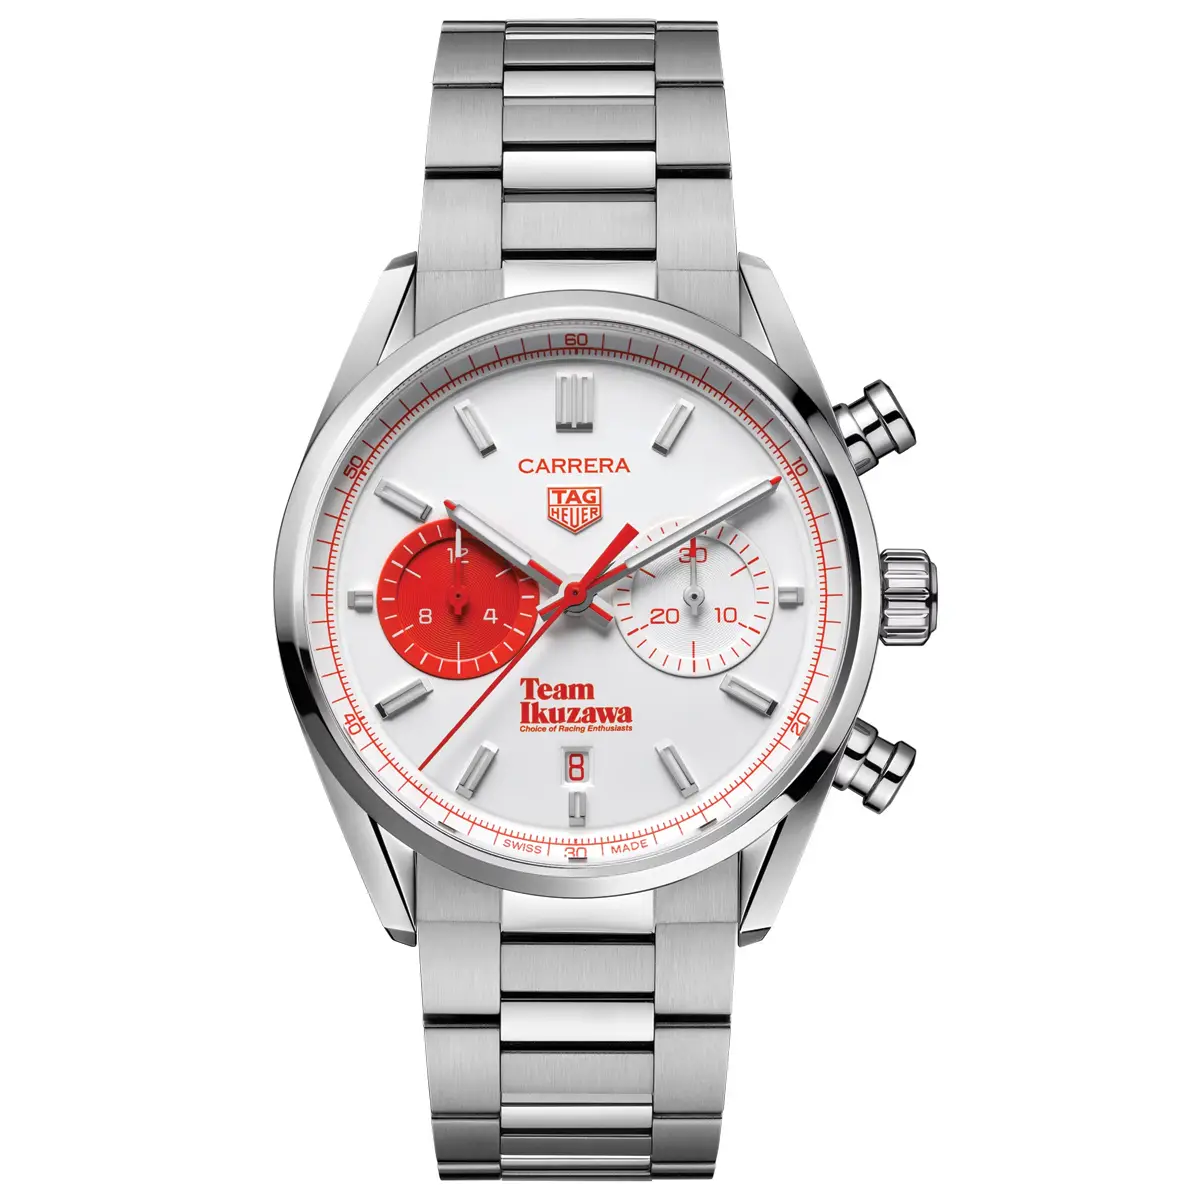 Đồng hồ Tag Heuer Carrera Team Ikuzawa By Bamford Limited Edition CBN201F.EB0356 mặt số màu trắng. Dây đeo bằng thép và da . Thân vỏ bằng thép.